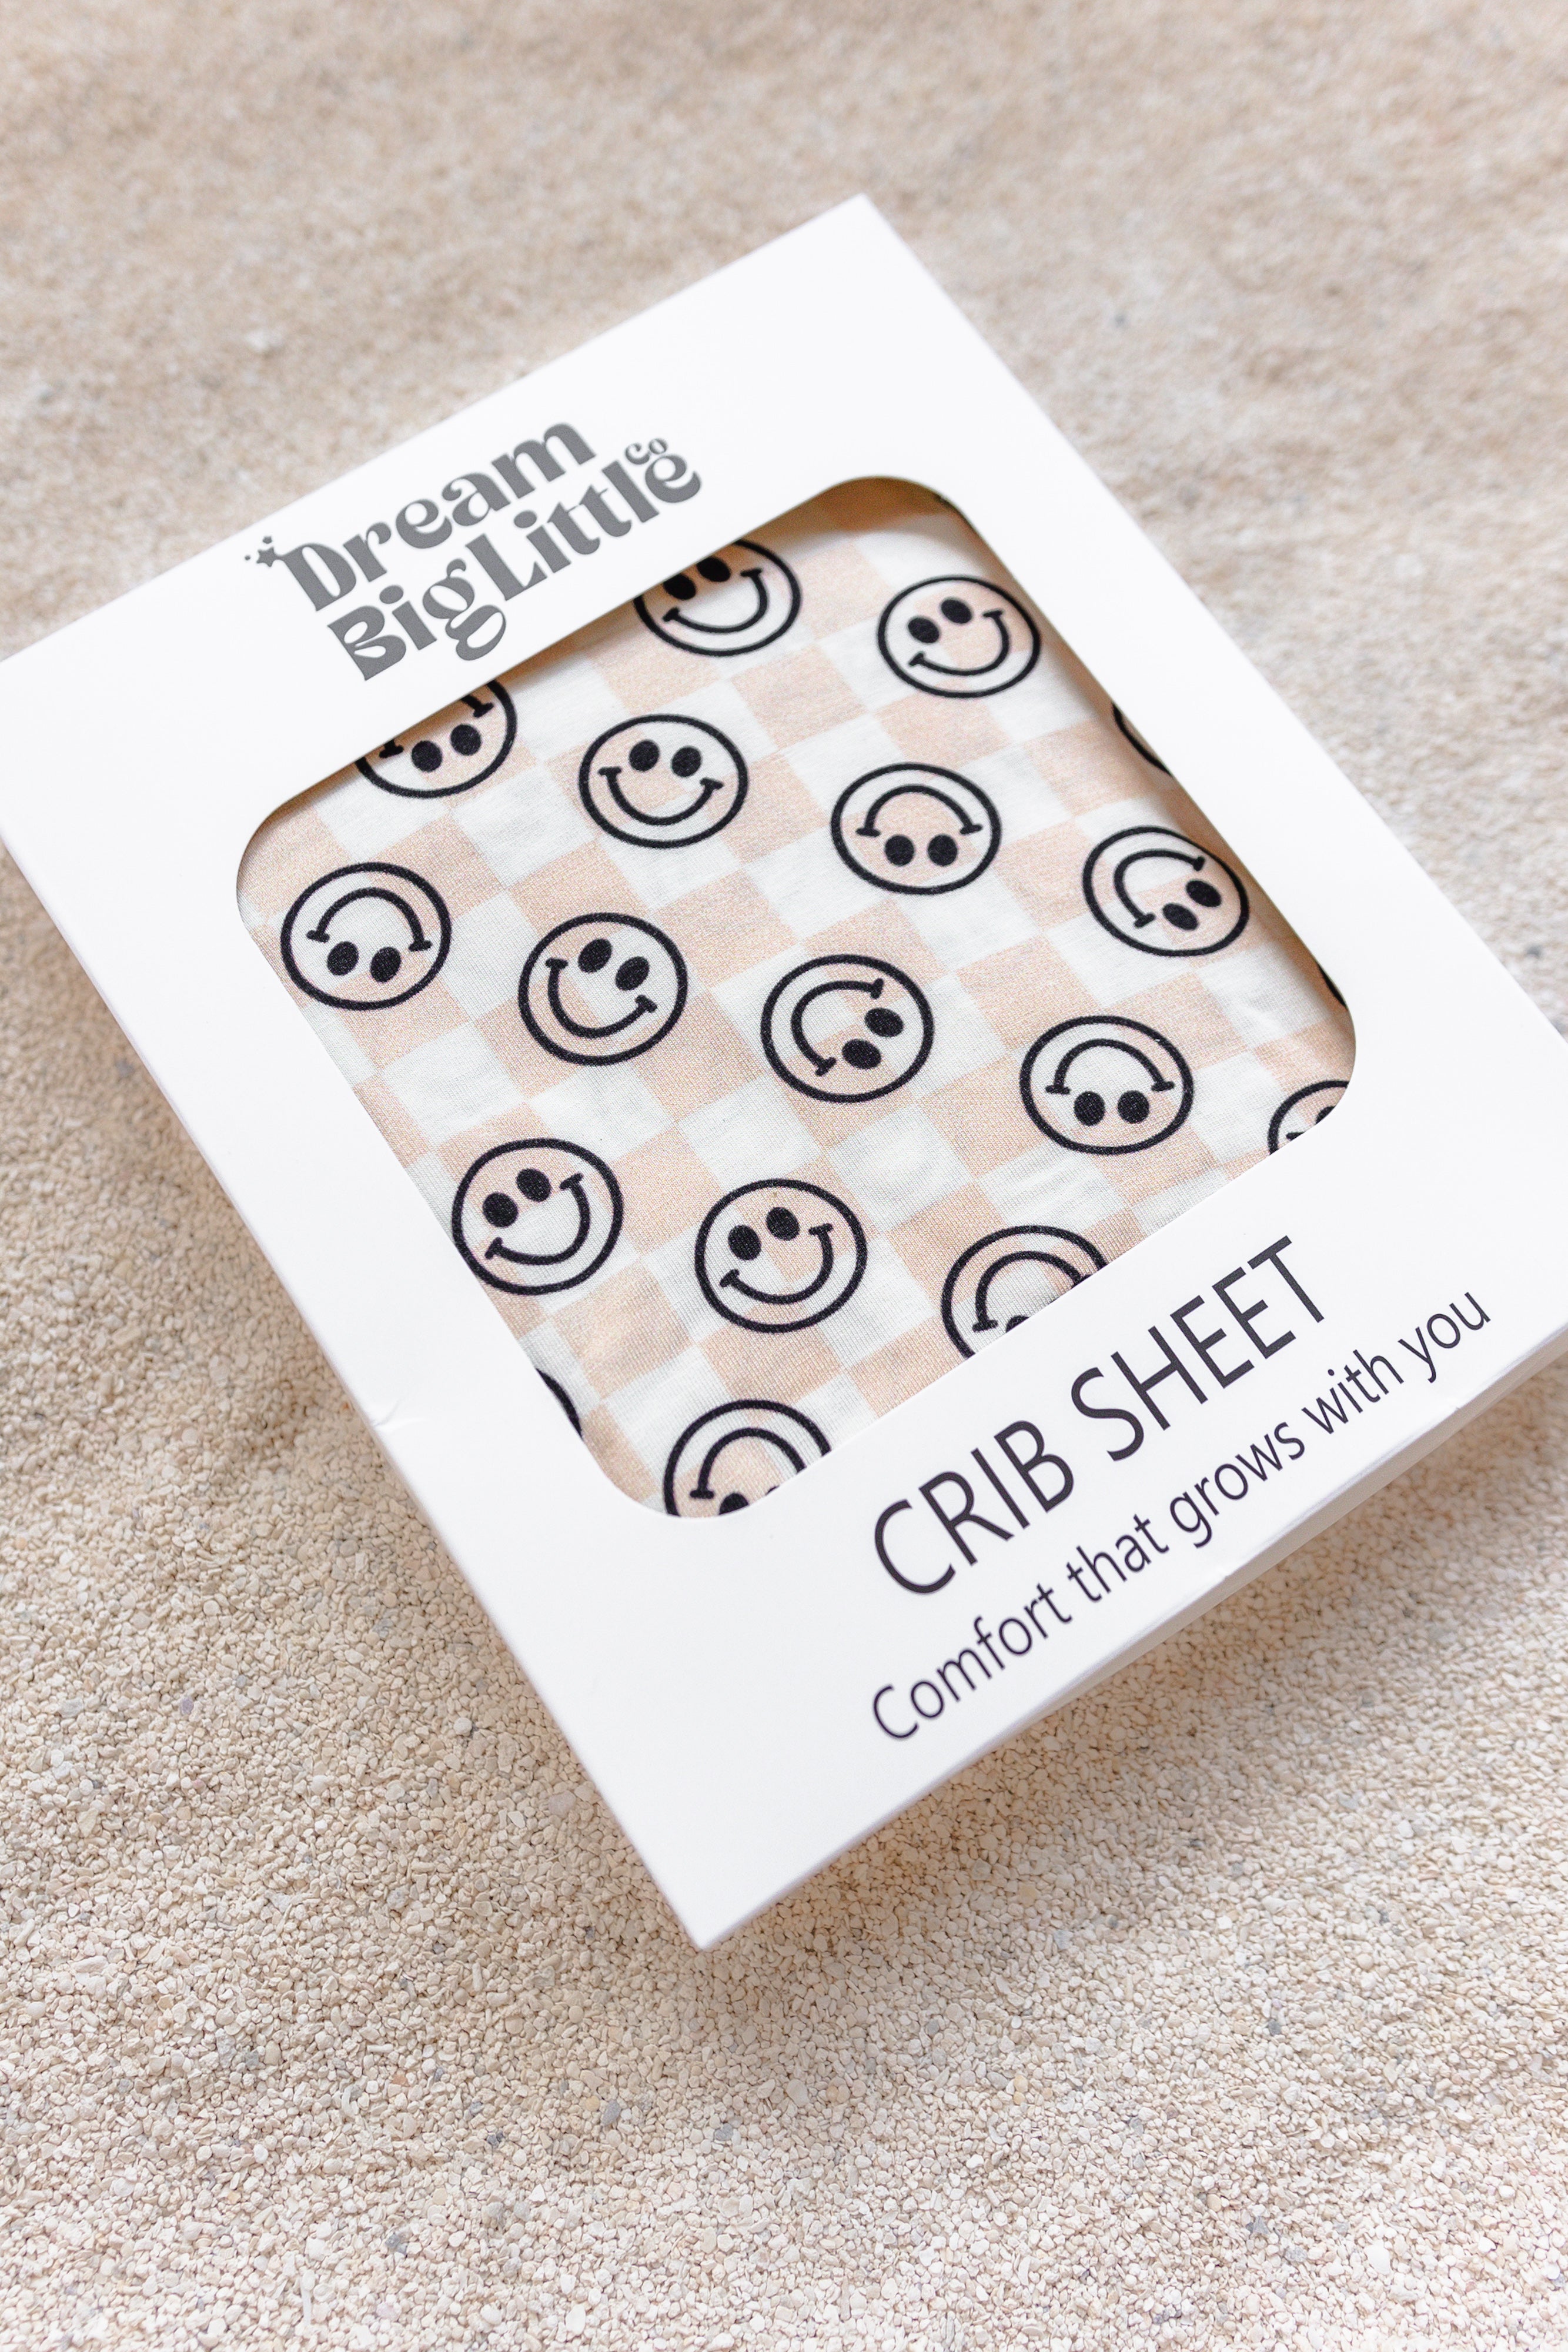 Sandy Smiles Checkers Dream Crib Sheet